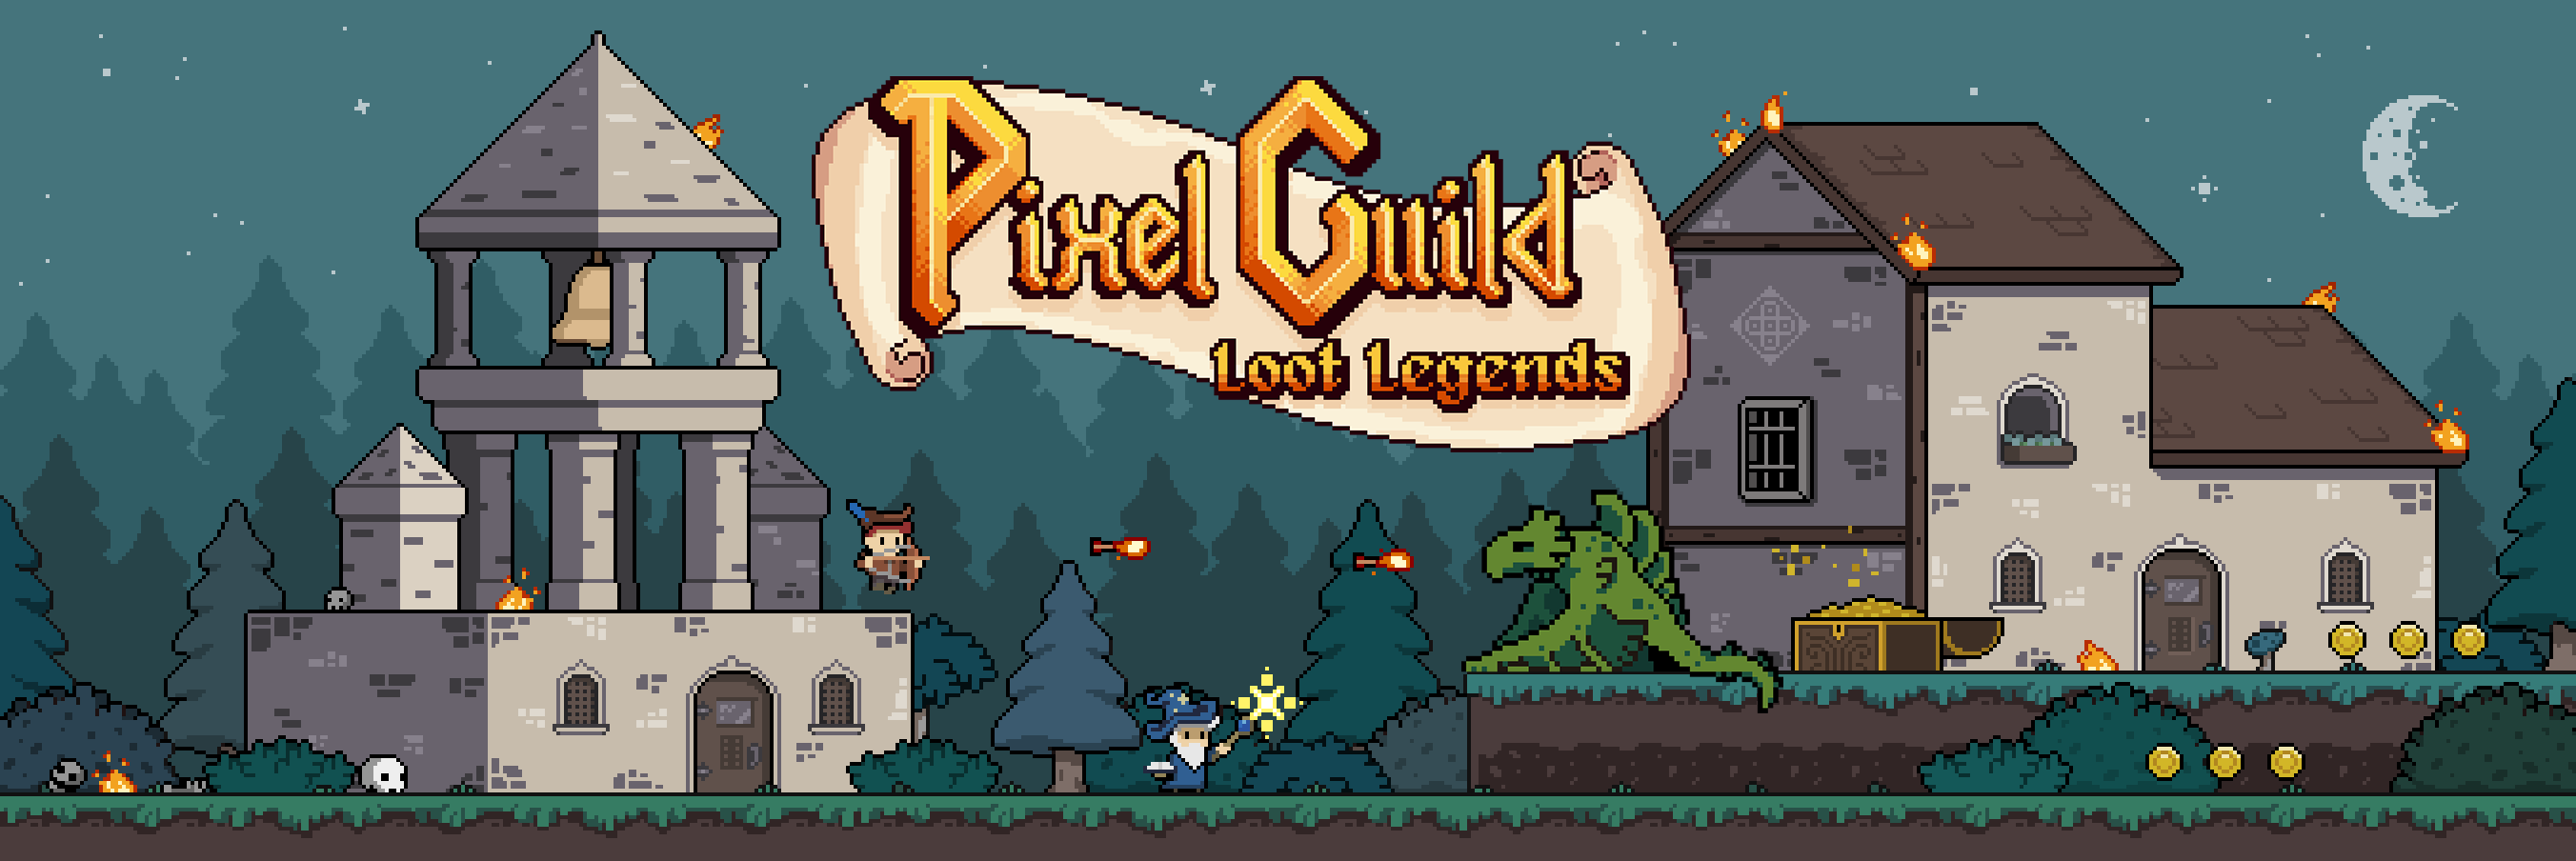 pixel guild banner.png